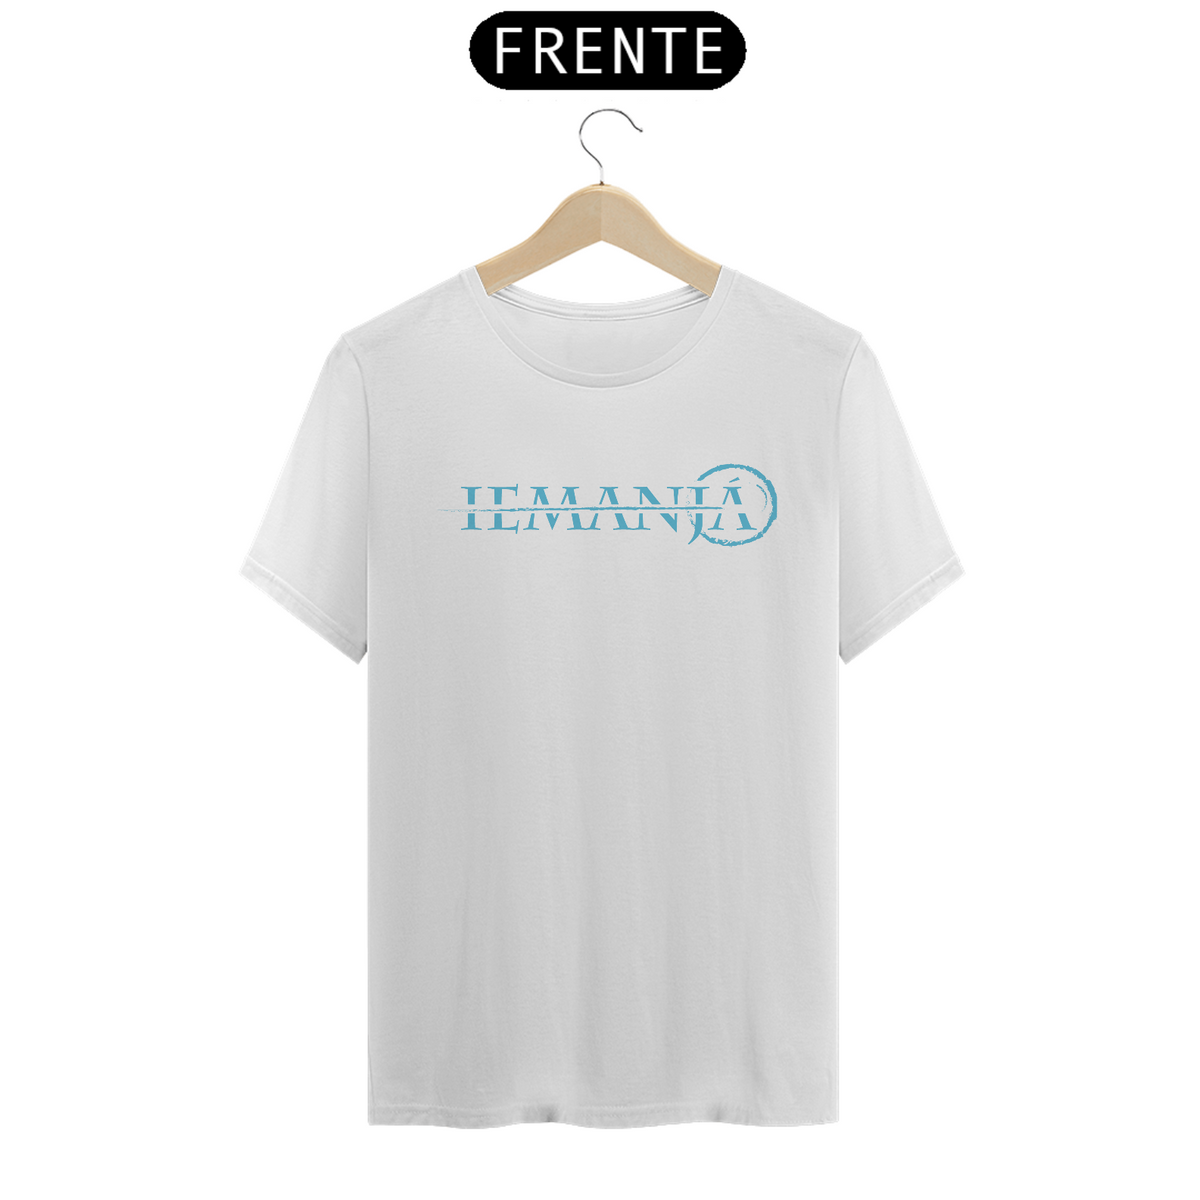 Nome do produto: T-Shirt Classic Branca - Okan Iemanjá